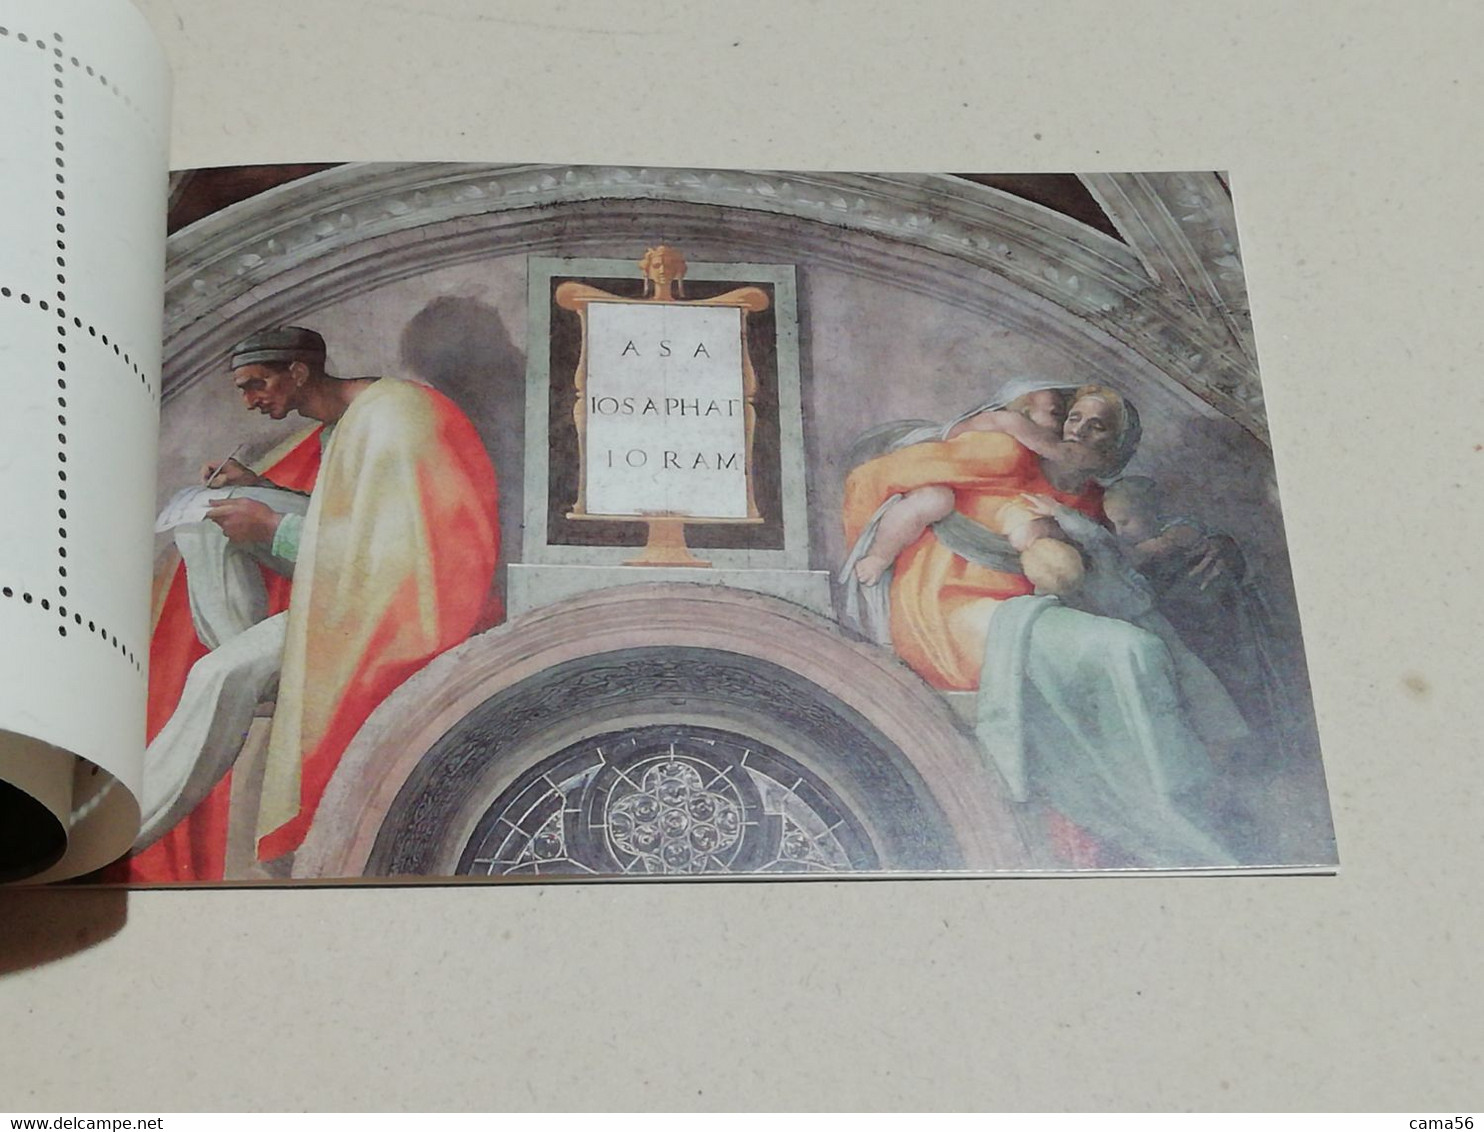 Vaticano 1991 - Libretto Restauro della Cappella Sistina.